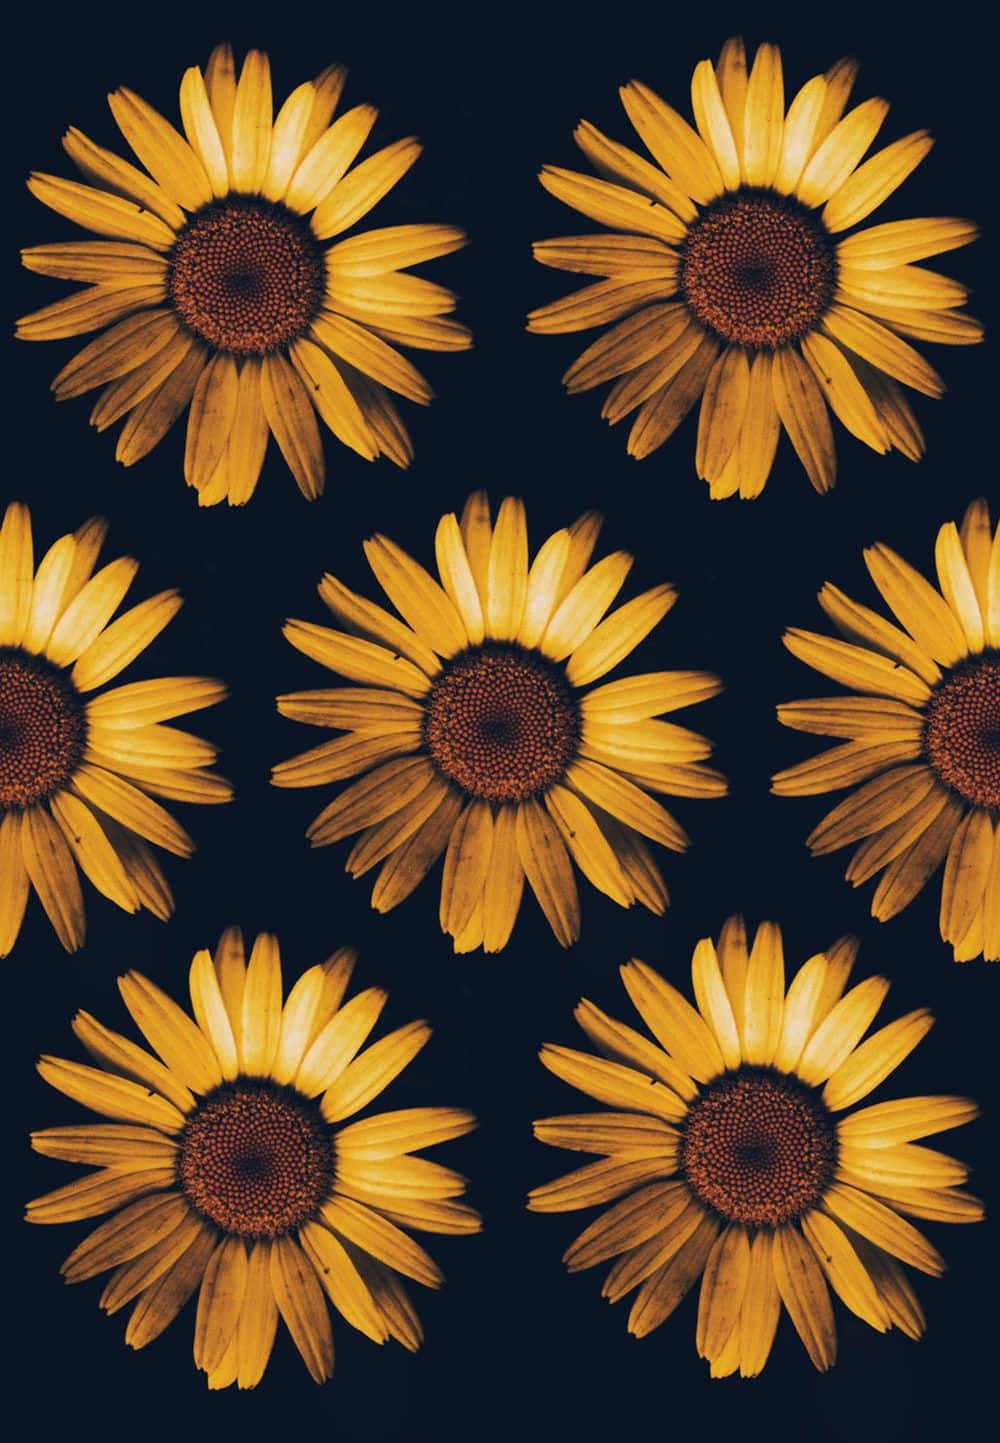 A Growing Black Sunflower Wallpaper